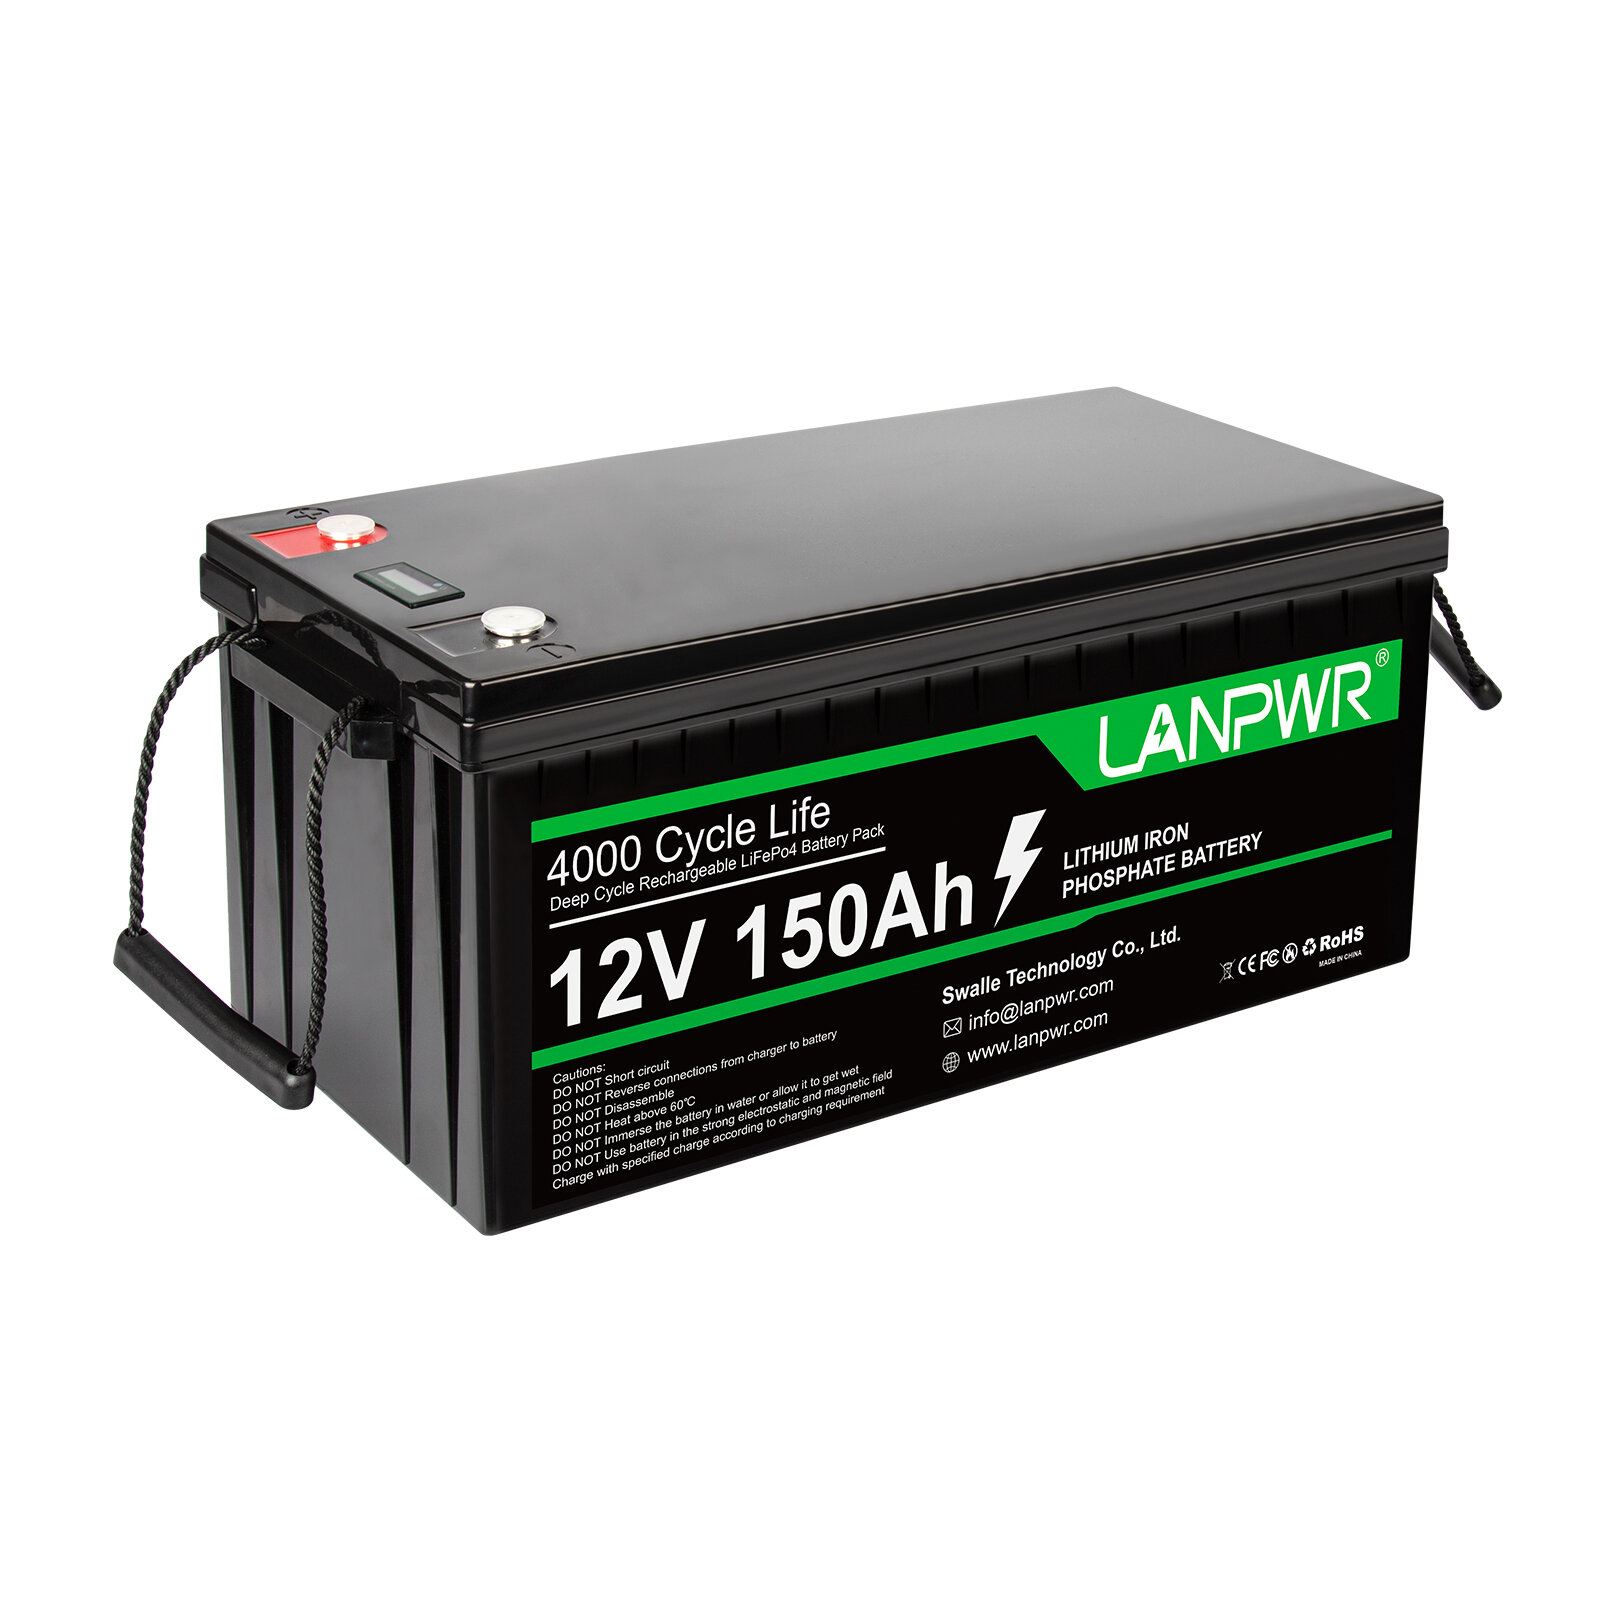 [EU Direct] Bateria LANPWR LiFePO4 12V 150Ah z pojemnością 1920Wh i wbudowaną baterią litowo-jonową o mocy 100A BMS oraz o klasie ochrony IP65, przeznaczona do zastąpienia większości źródeł zasilania awaryjnego, magazynowania energii w domu i s